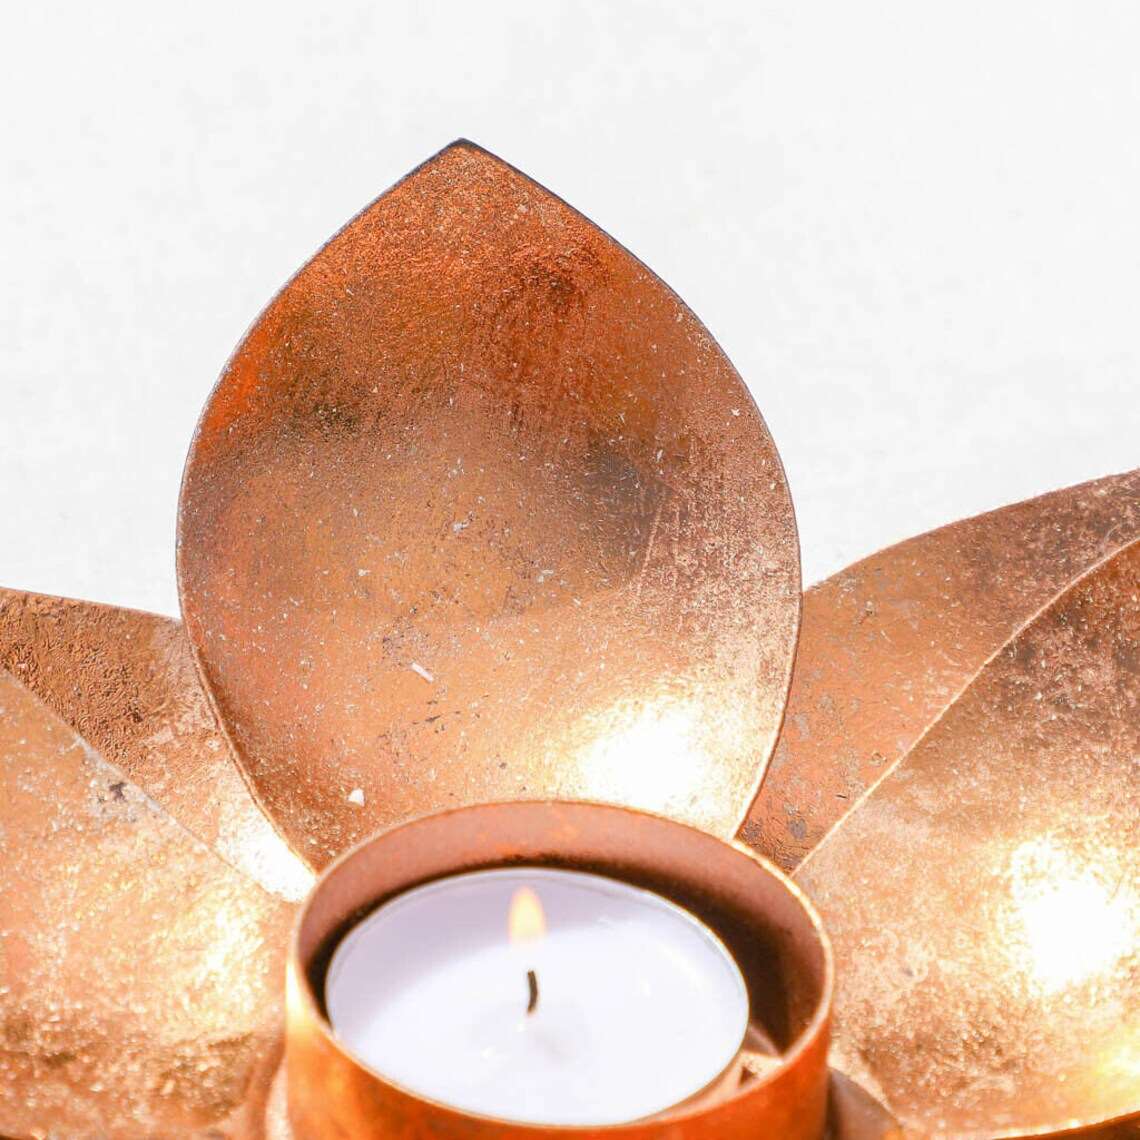 Black Copper Lotus Tealight Candle Holder Black Qubd